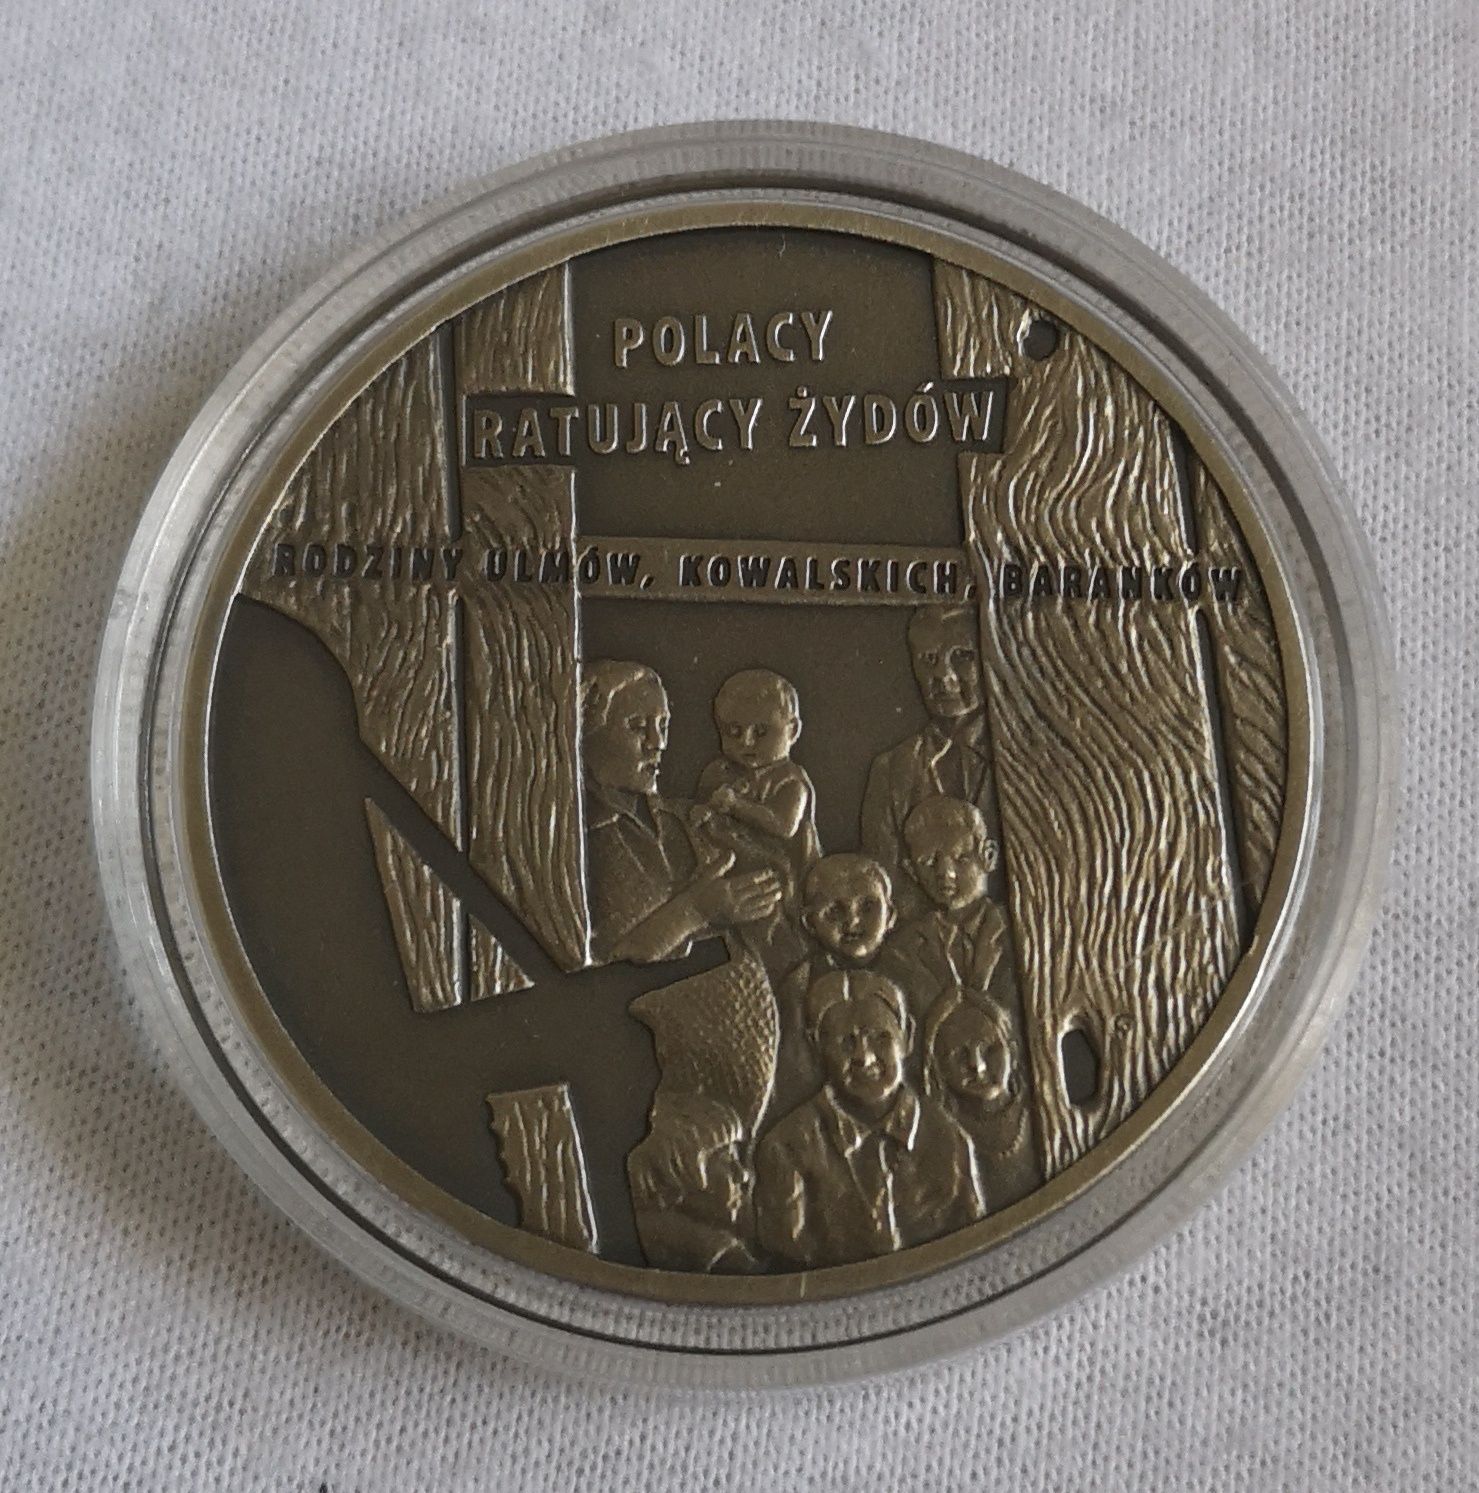 Moneta kolekcjonerska 20 zł 2012 r. Polacy ratujący Żydów